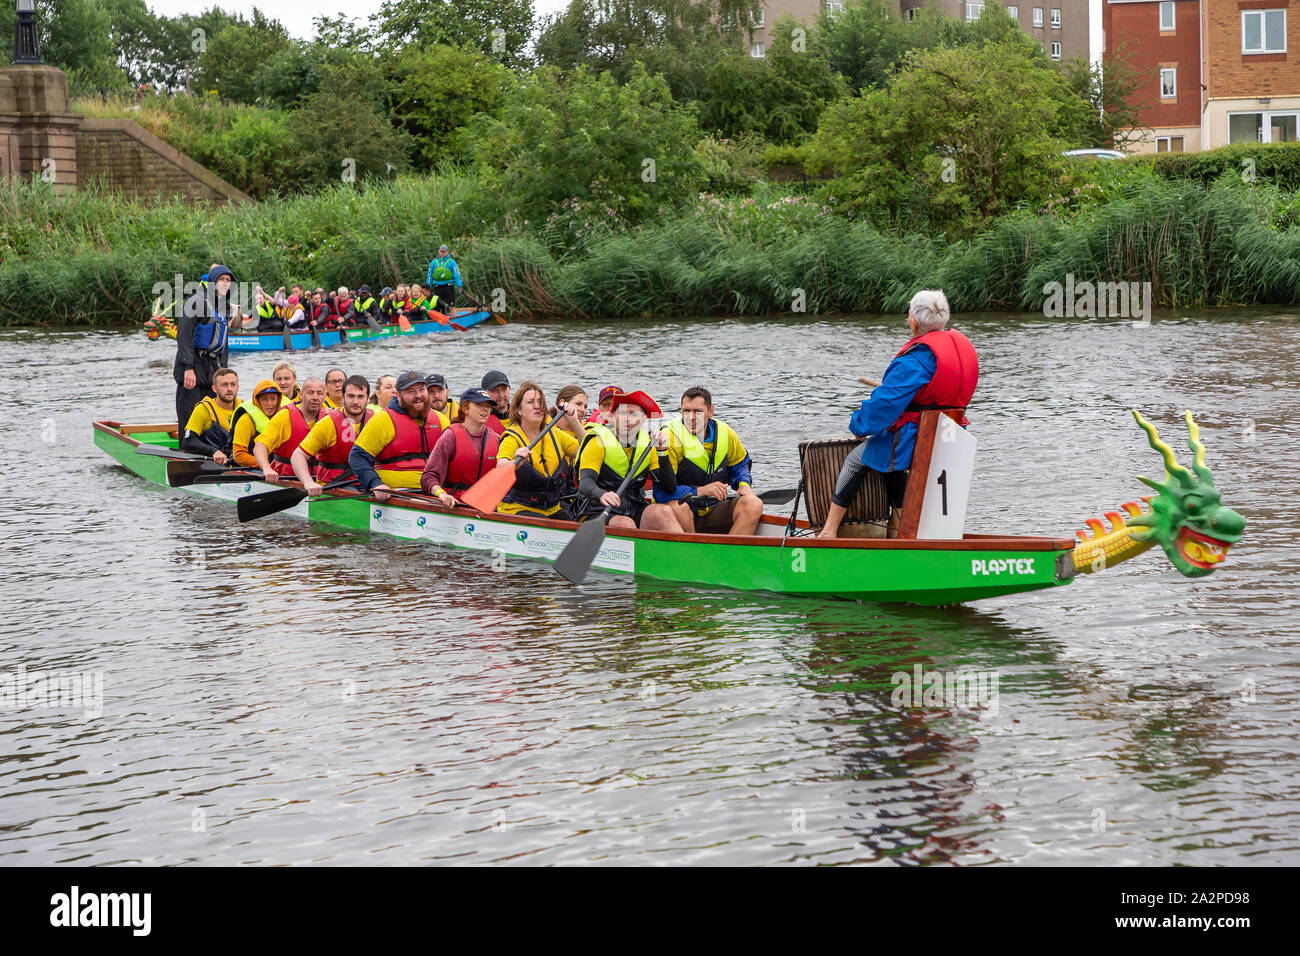 Los equipos vienen al borde del río al final de la carrera de botes dragón 2019 en ayuda de San Rocco's Hospice, celebrado en el Club de Remo en Warrington, Cheshire, Engla Foto de stock